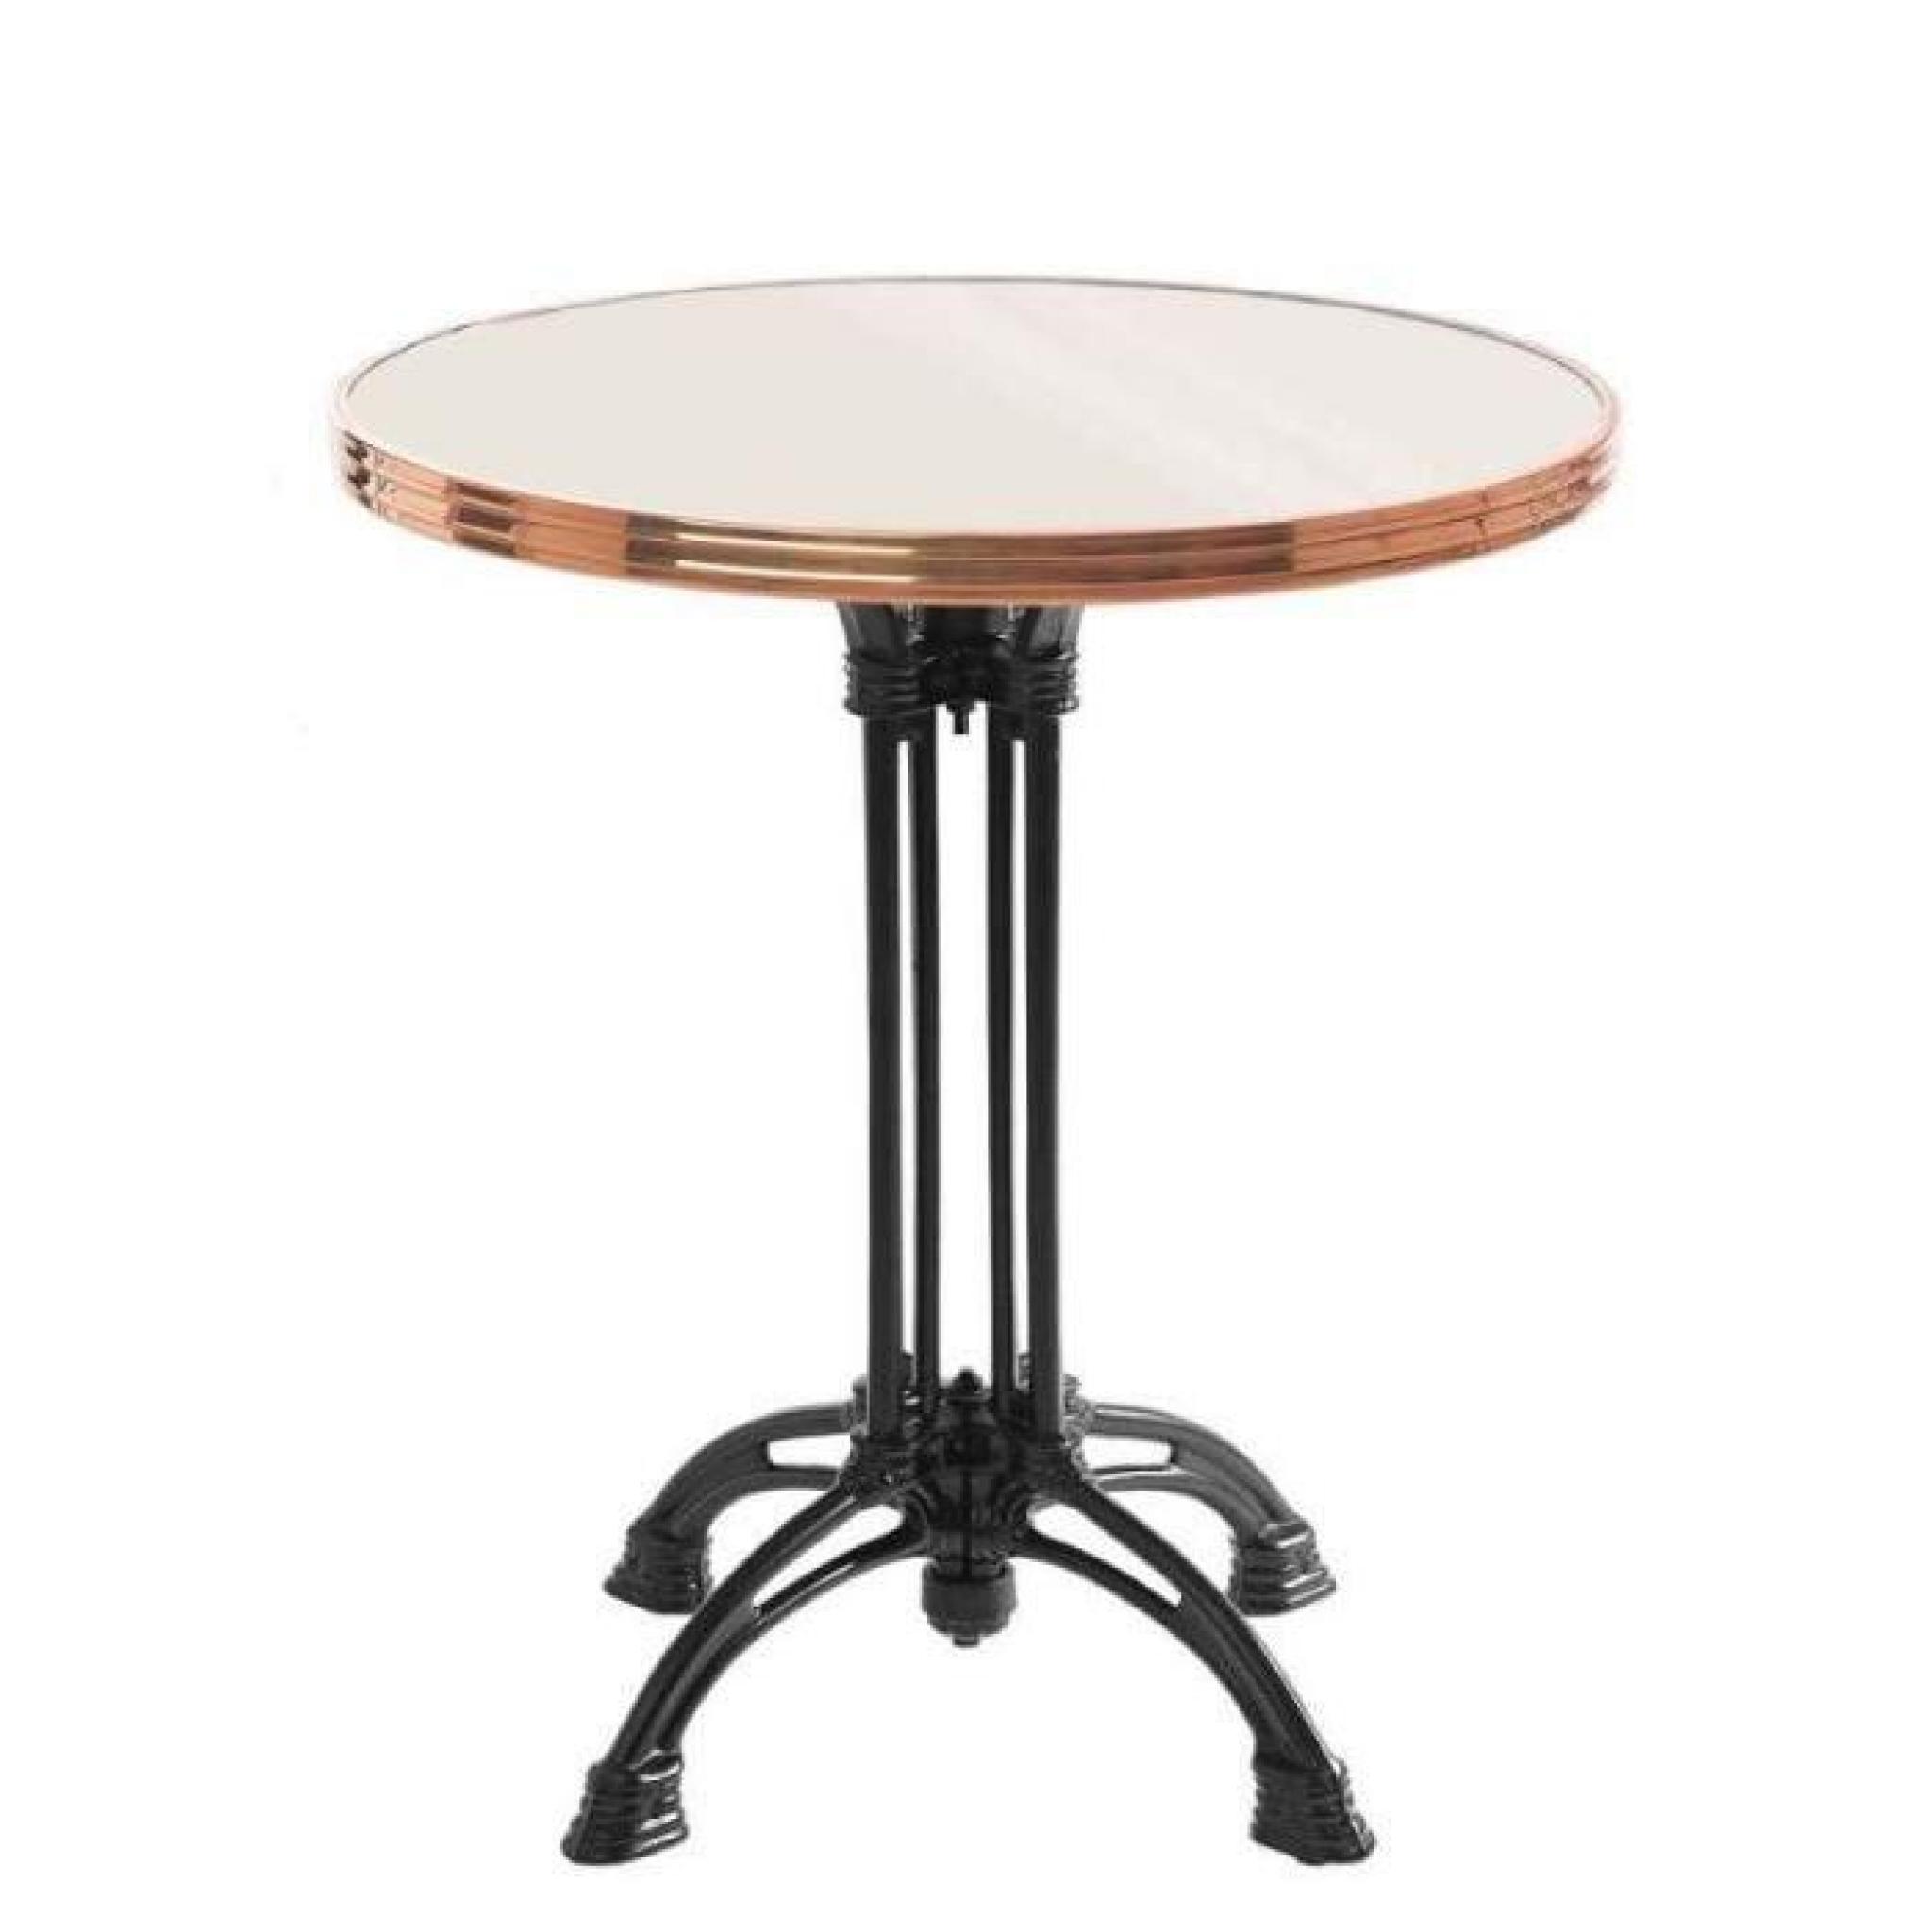 table bistrot ronde couleur ivoire avec cerclage en cuivre - pied 4 branches - h70 x d70 cm